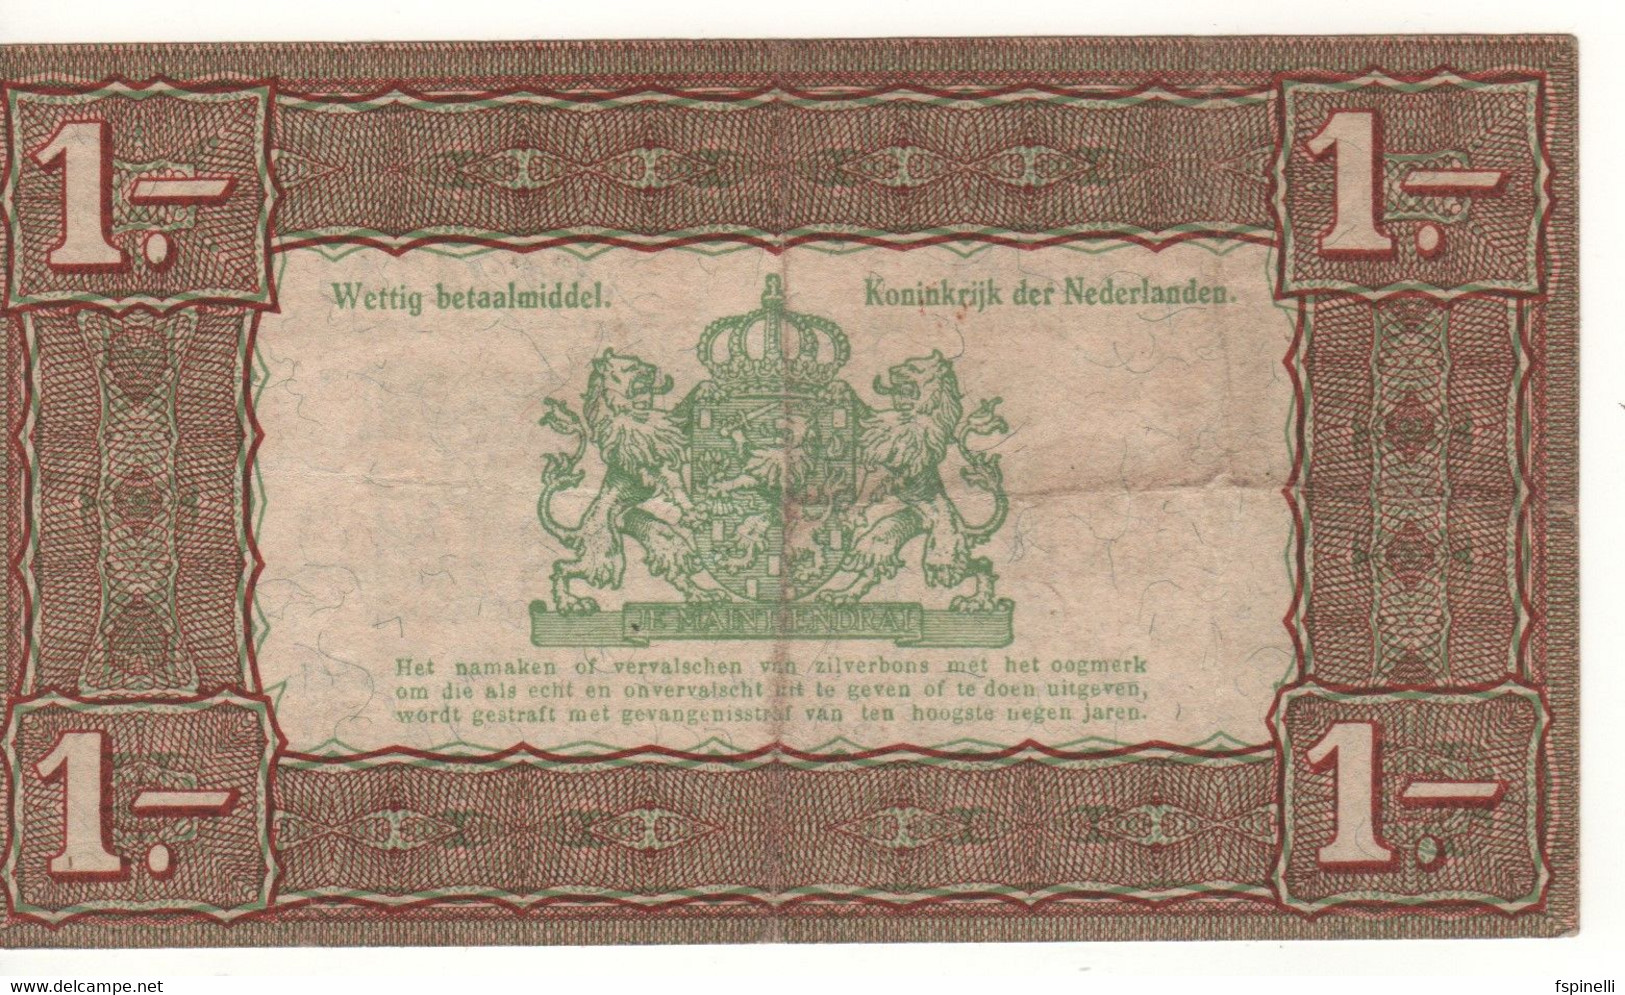 NETHERLANDS  1 Gulden   P61   Dated   1.10.1938 - 1 Florín Holandés (gulden)